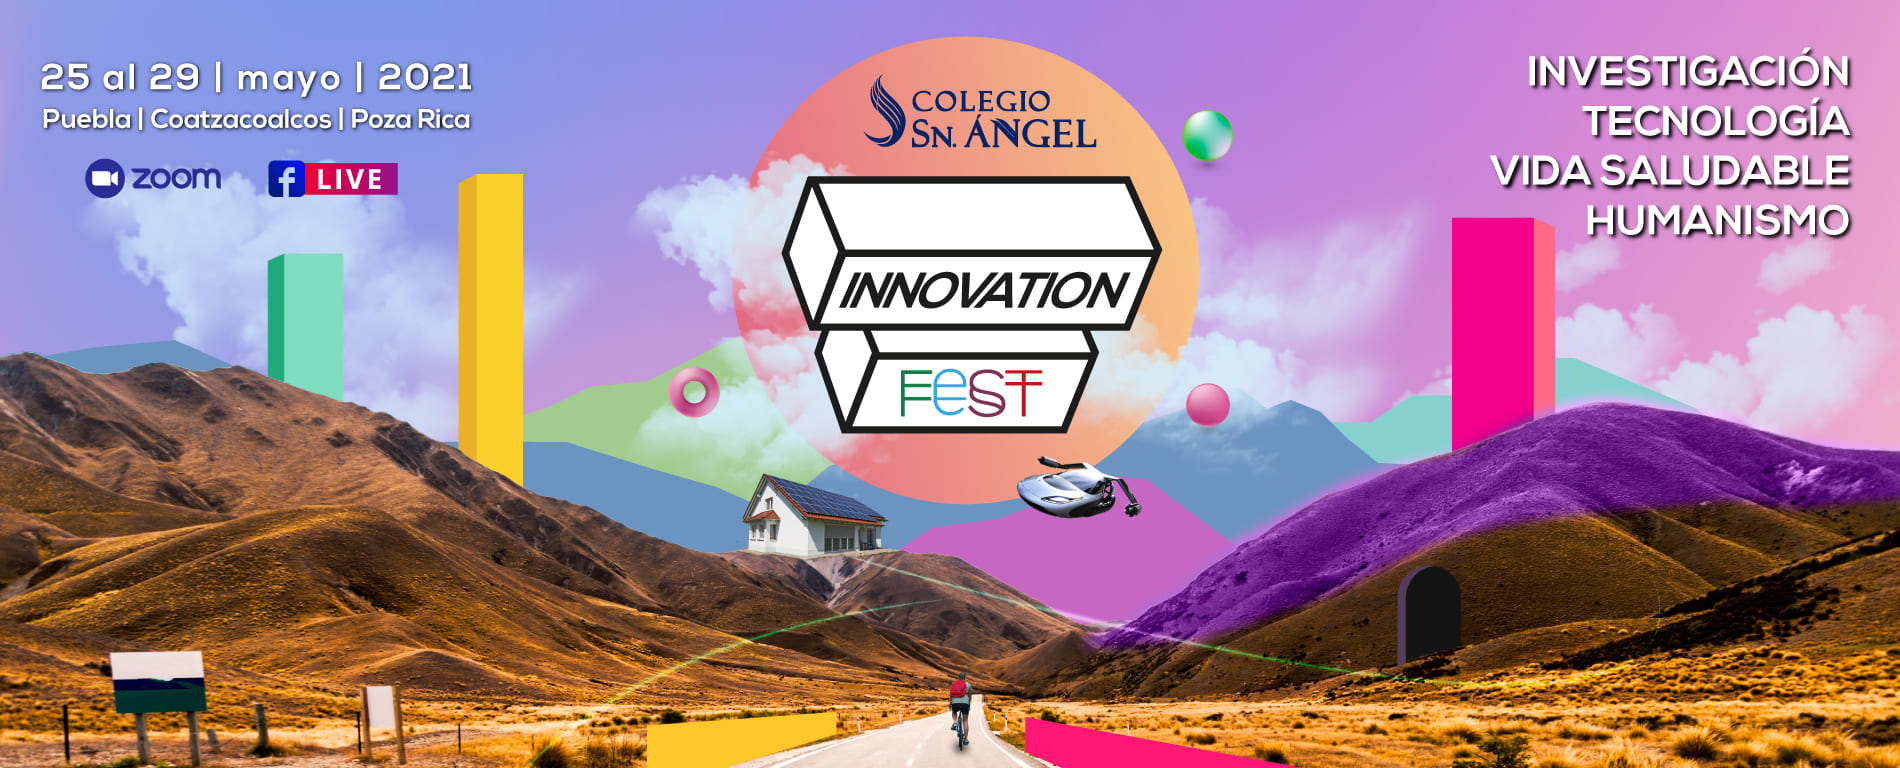 Slider Innovation Fest 2021